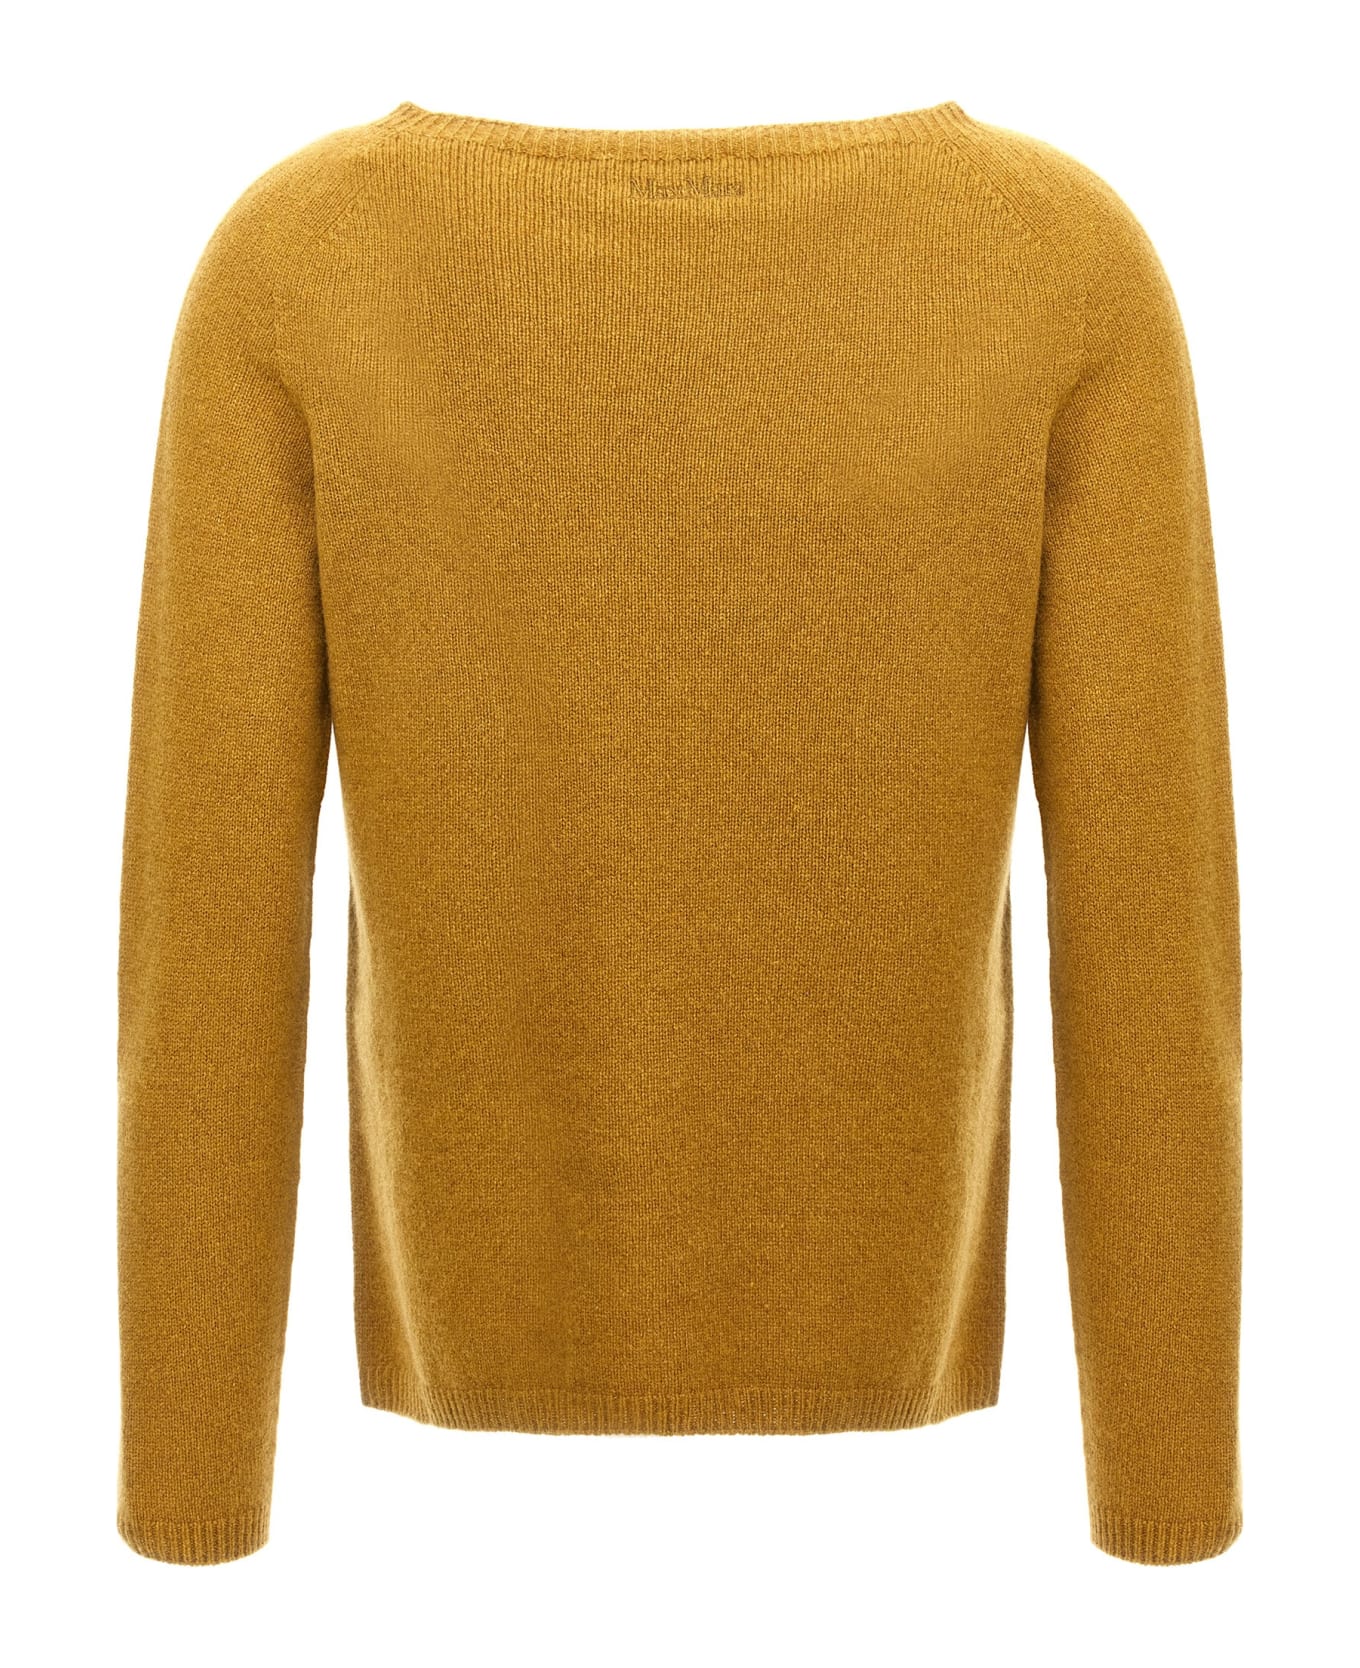 'S Max Mara 'giori' Sweater - Yellow ニットウェア